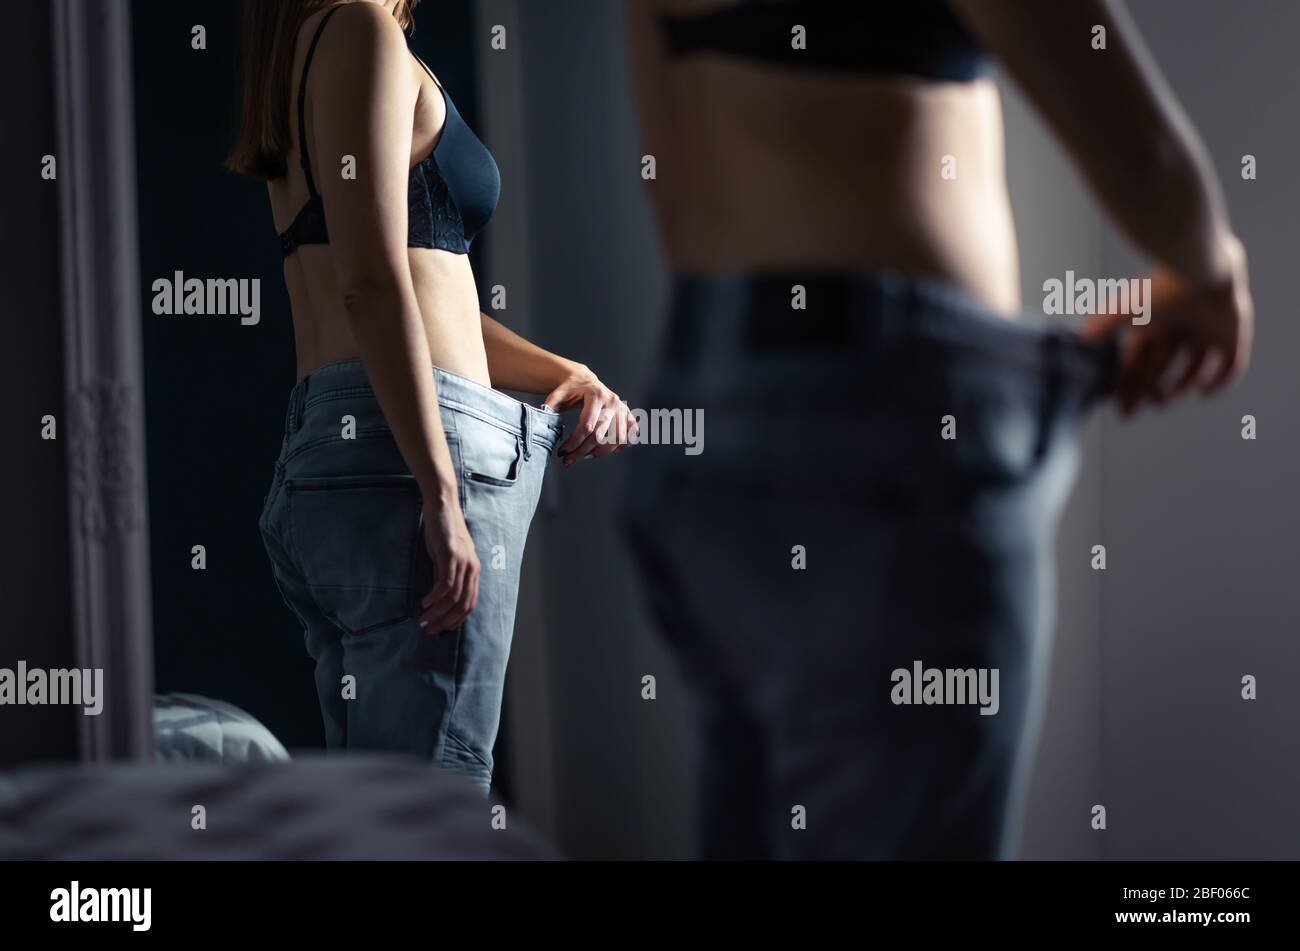 Petite femme mince portant un grand pantalon devant un miroir après perte de poids et régime. Fille sous-poids avec stress malsain d'être graisse. Banque D'Images